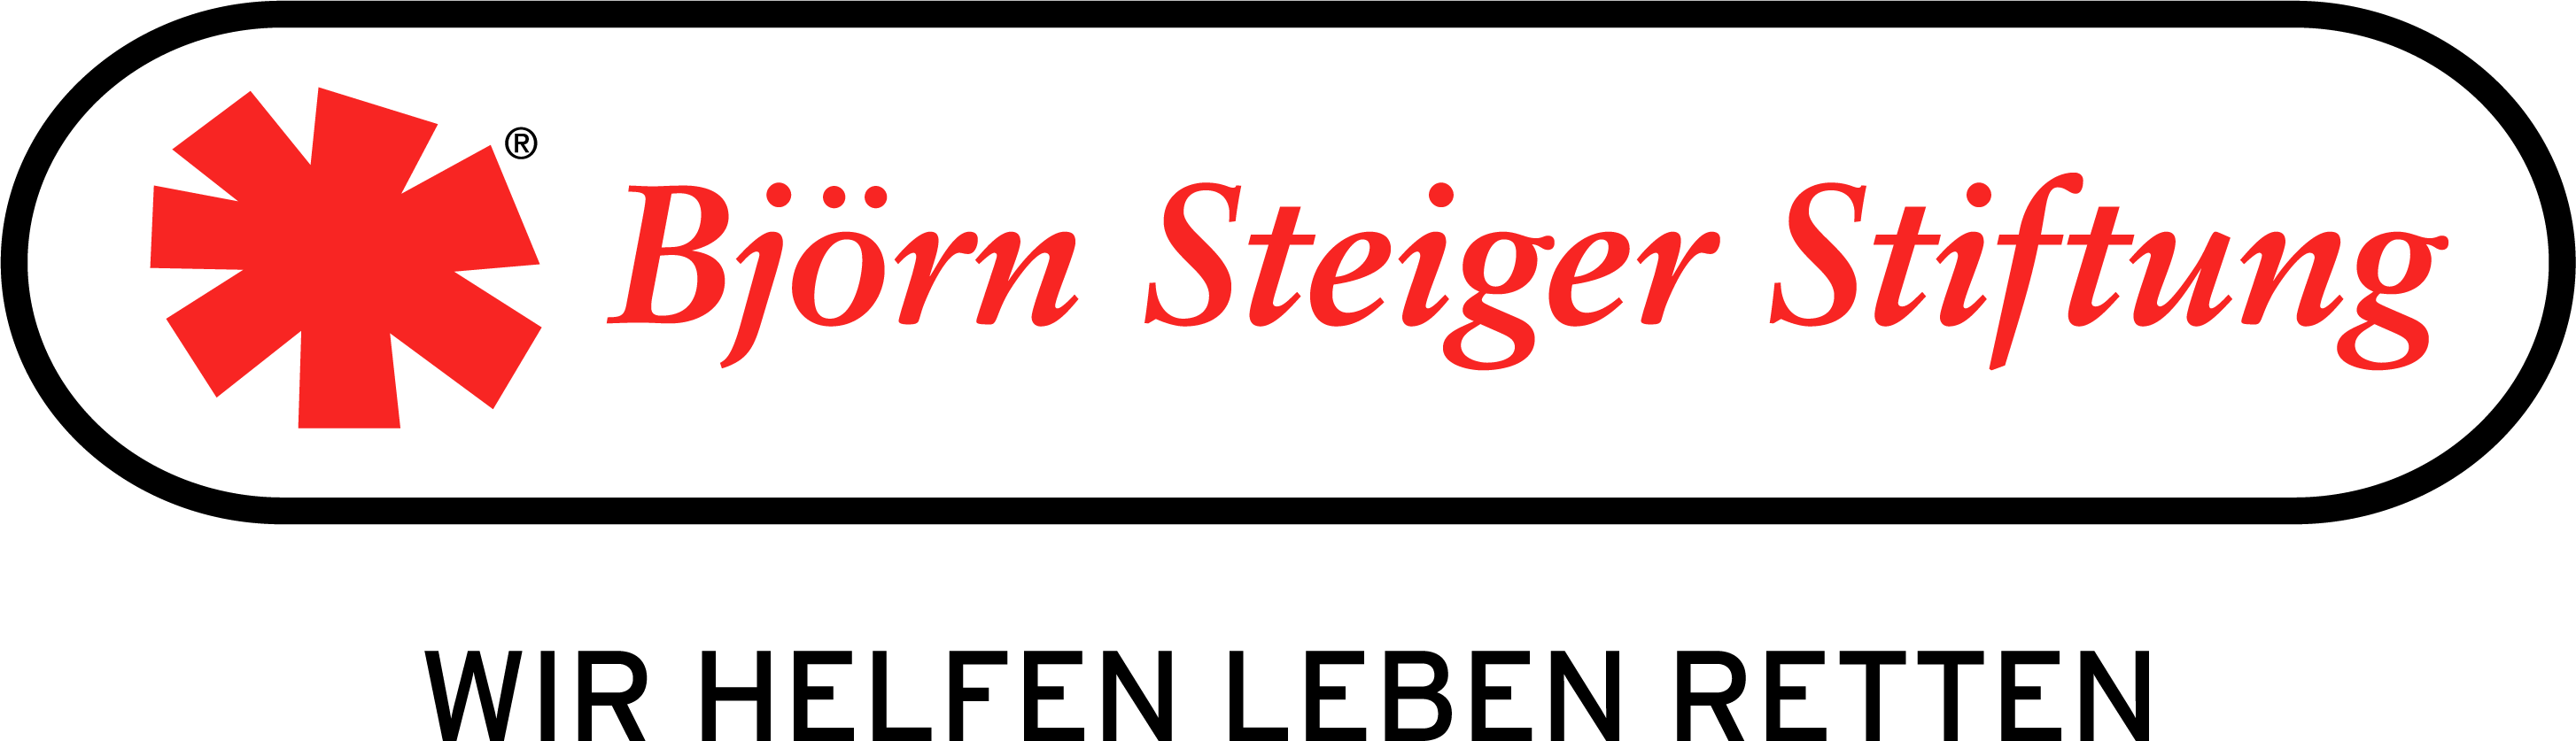 Björn Steiger Stiftung